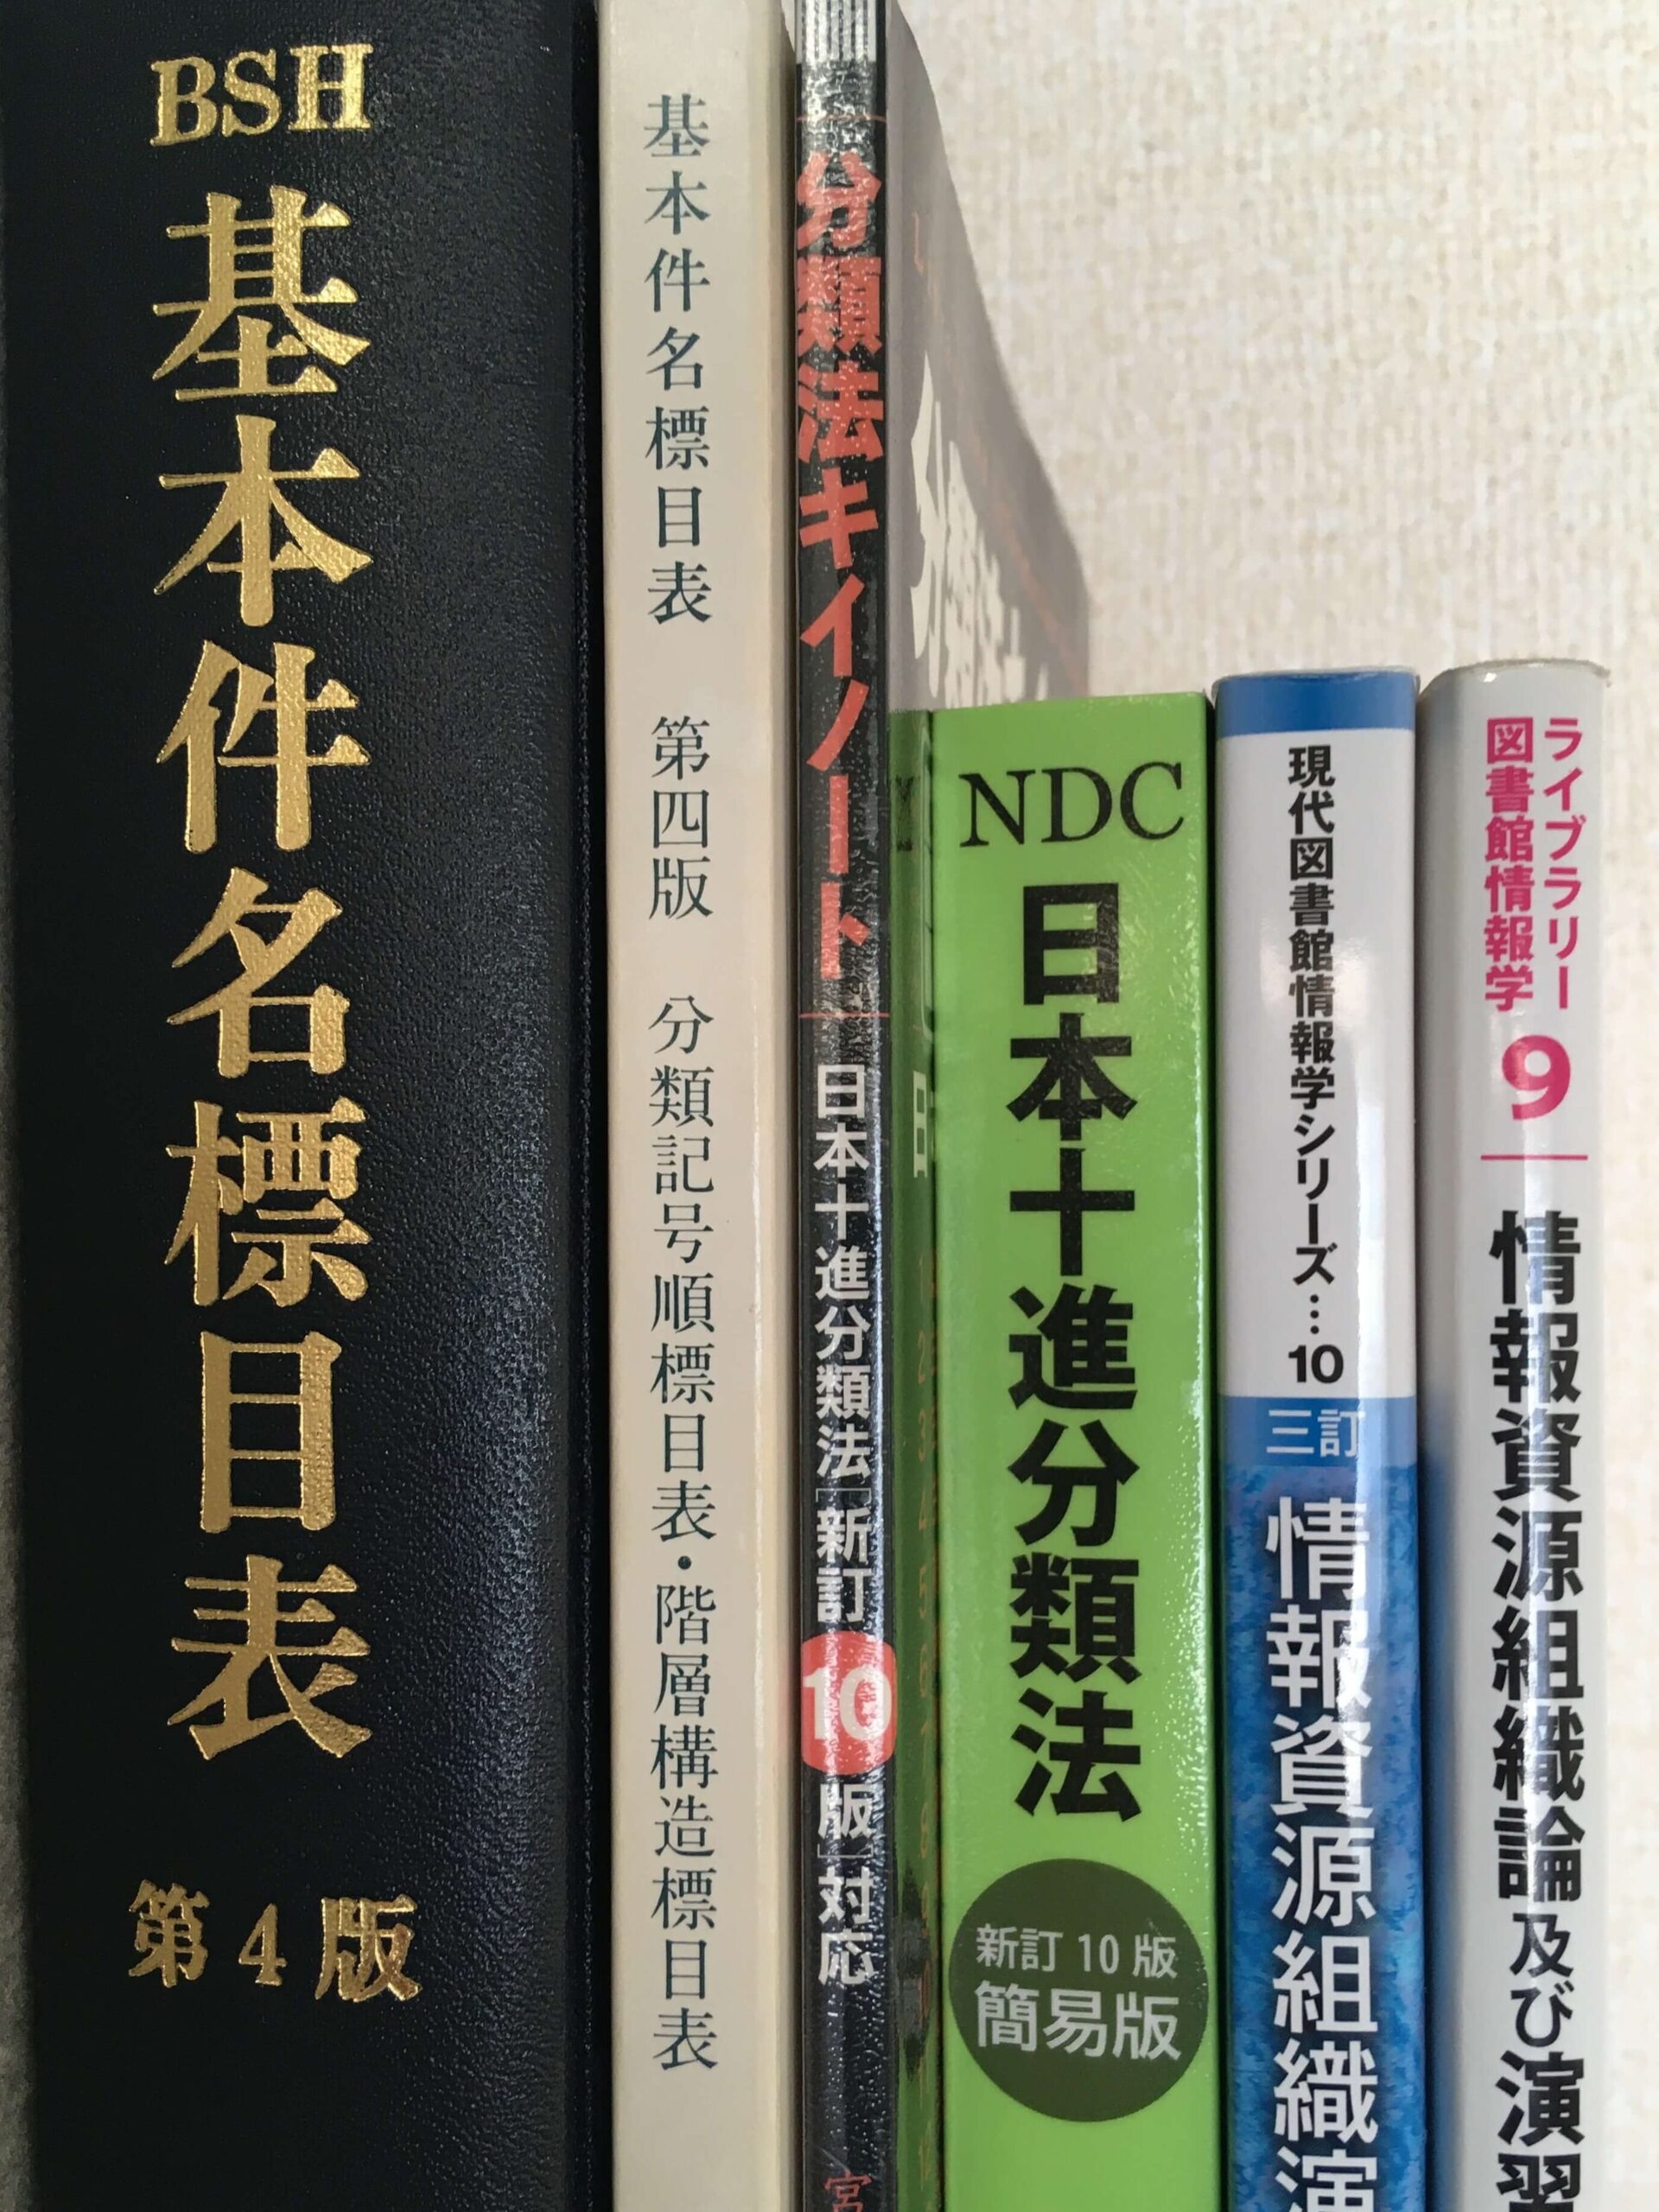 日本十進分類法新訂10版NDC 基本件名標目表第4版BSH - 人文/社会